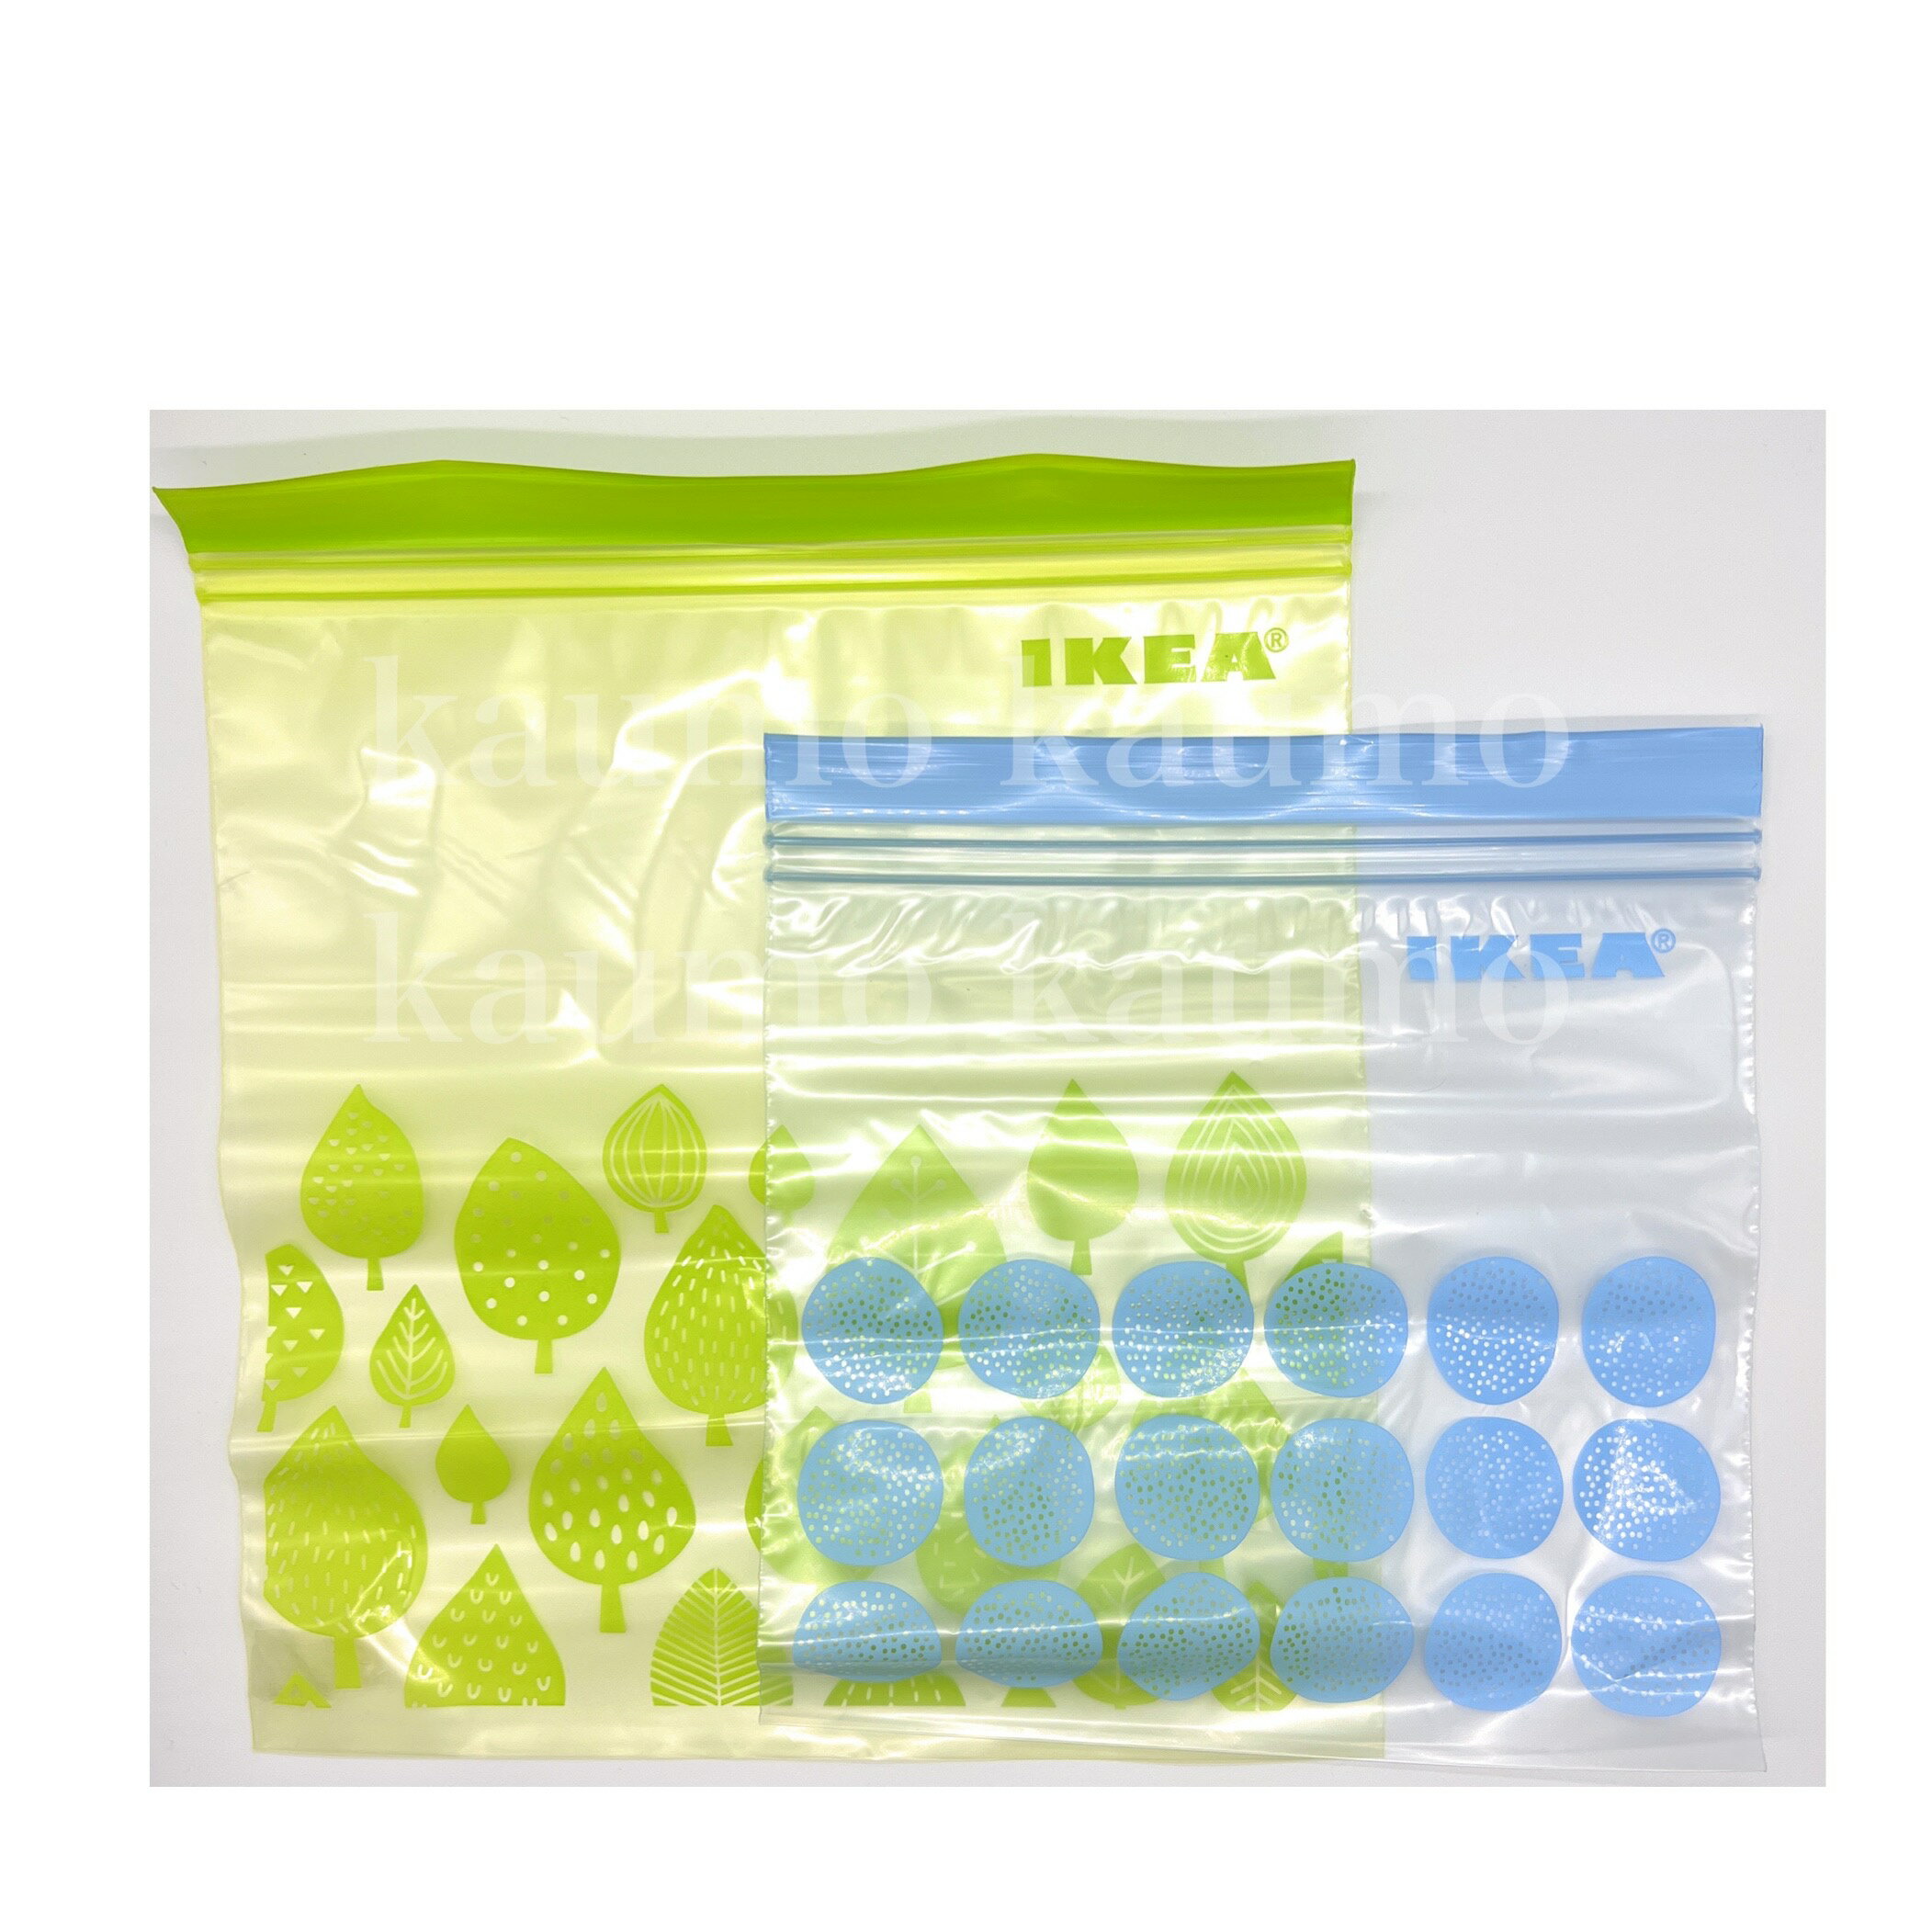 イケア IKEA ISTAD 袋 50枚入り プラスチック袋 フリーザーバッグ 透明袋 保存袋 小分け キッチン 洗面 食品 お菓子 ギフトにも 80340411(袋ISTAD-GR50)